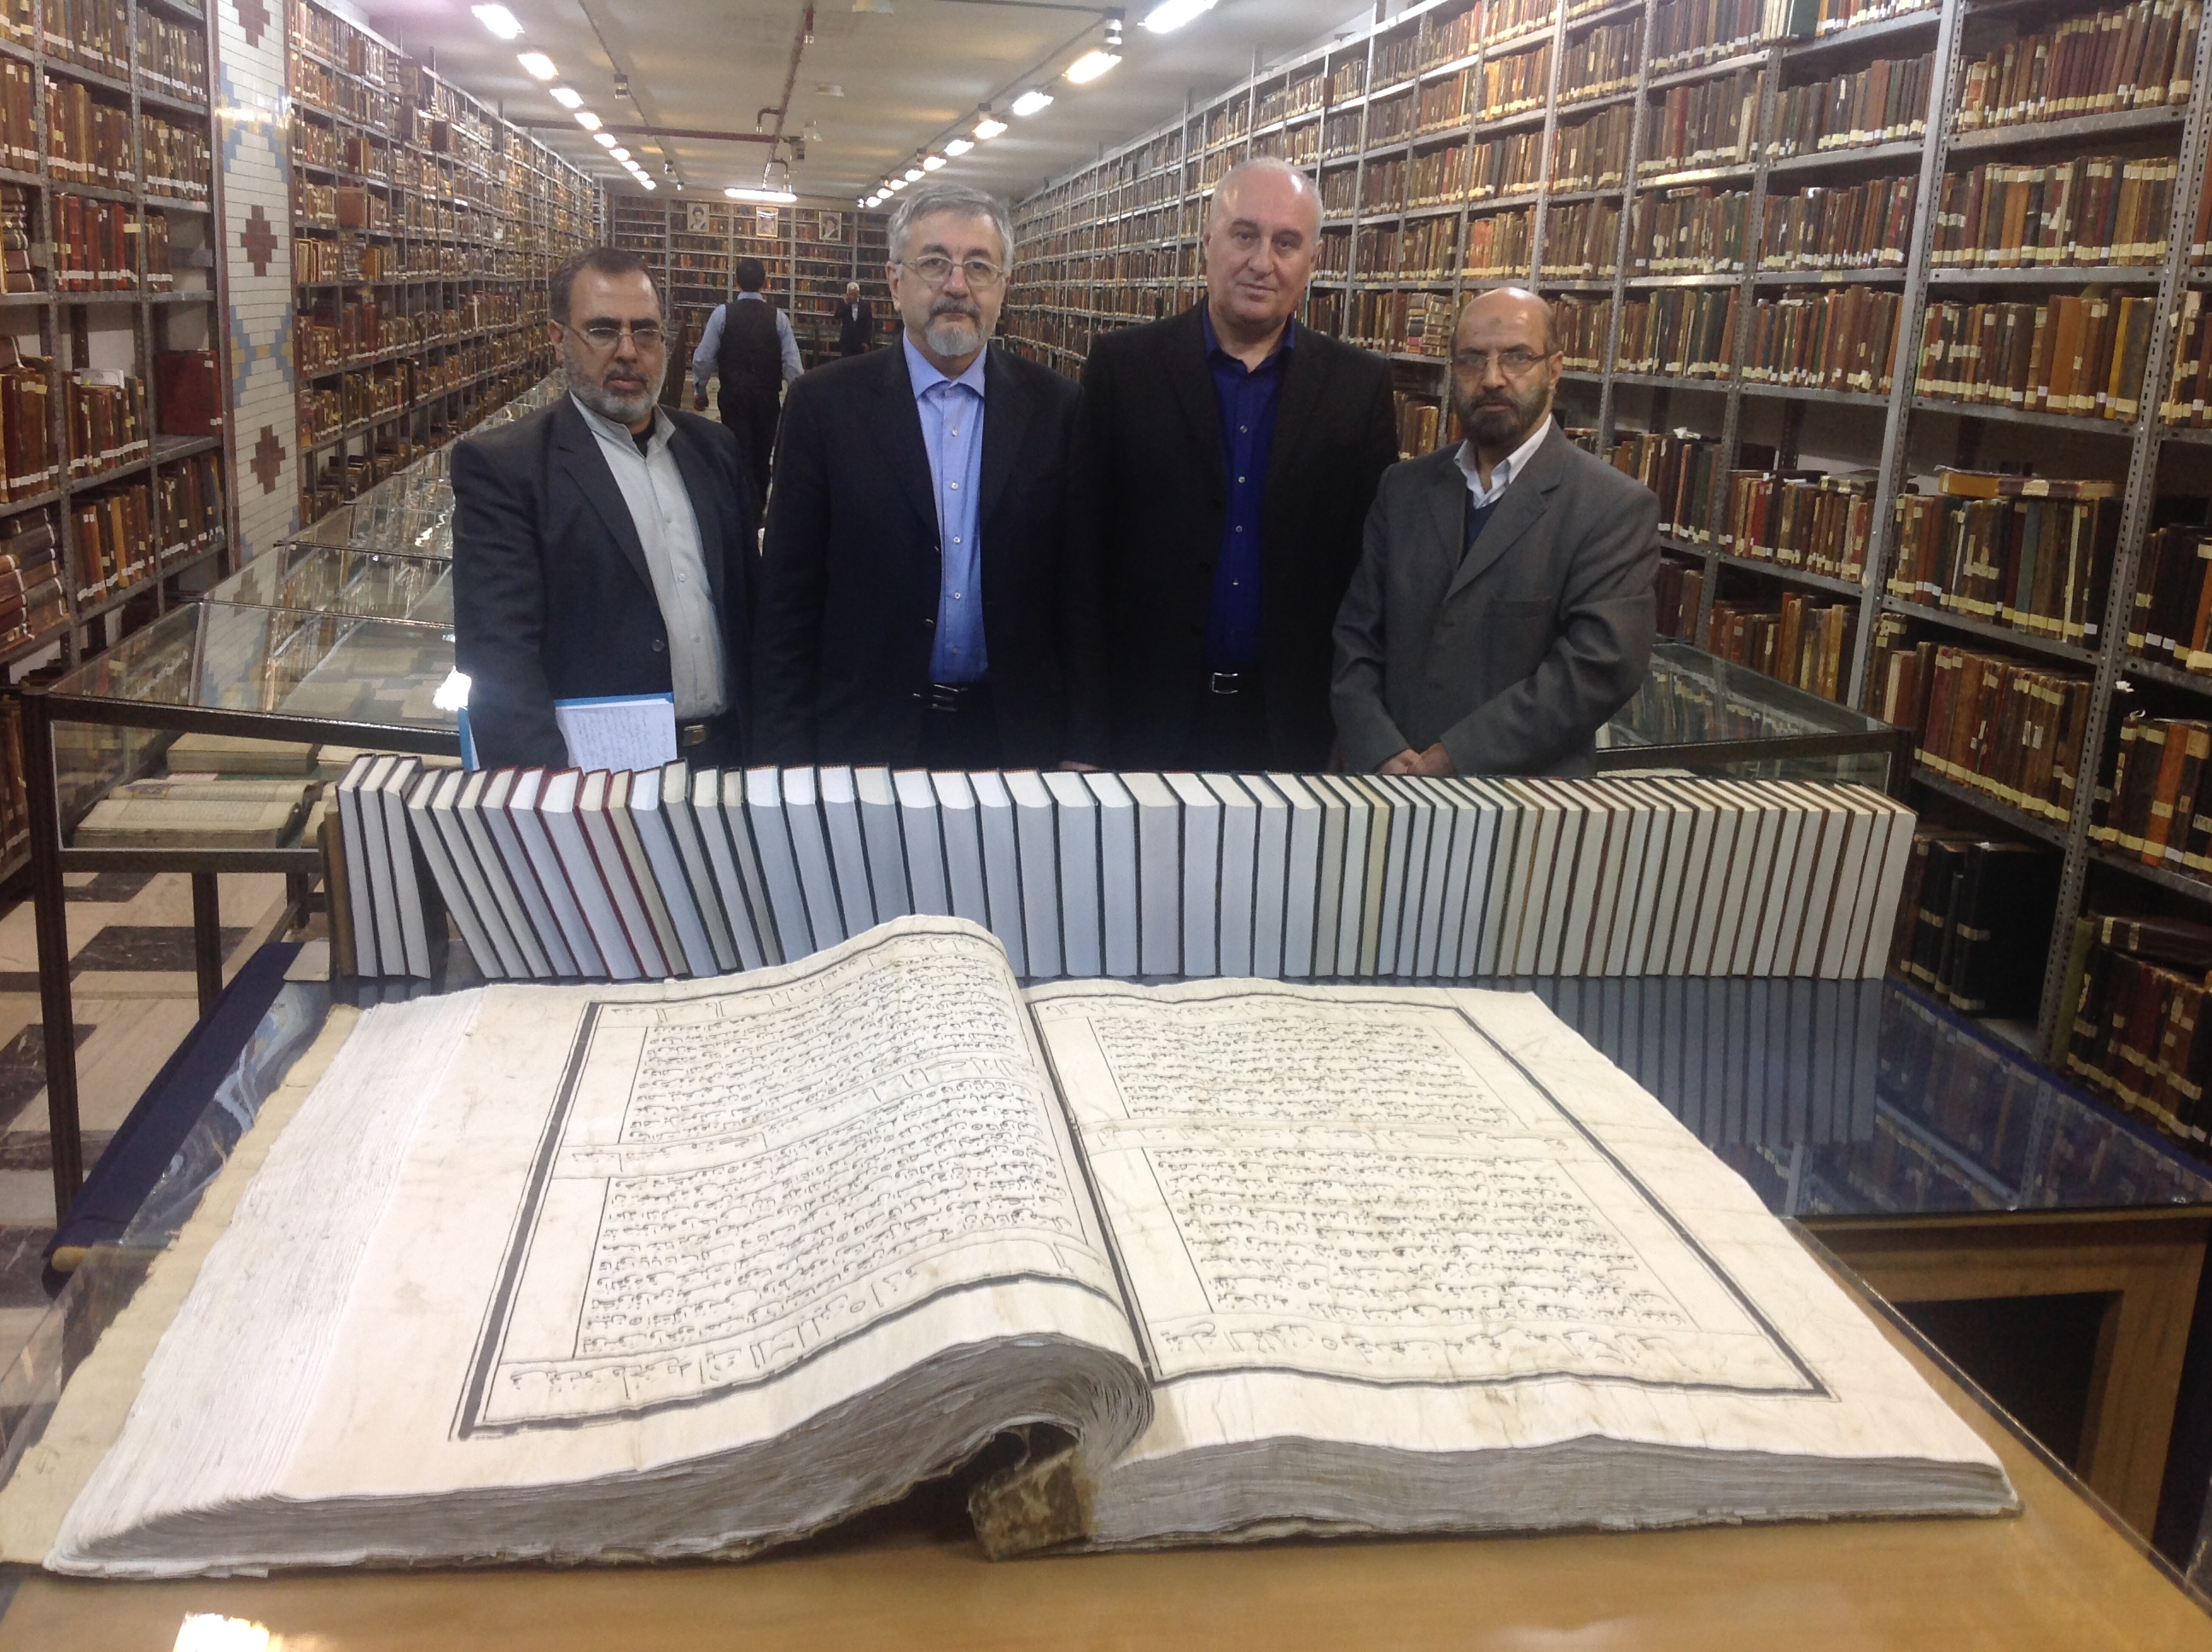 Хранитель Гранд Библиотеки, господин Авсати (справа крайний) демонстрирует самый большой по размеру Коран.